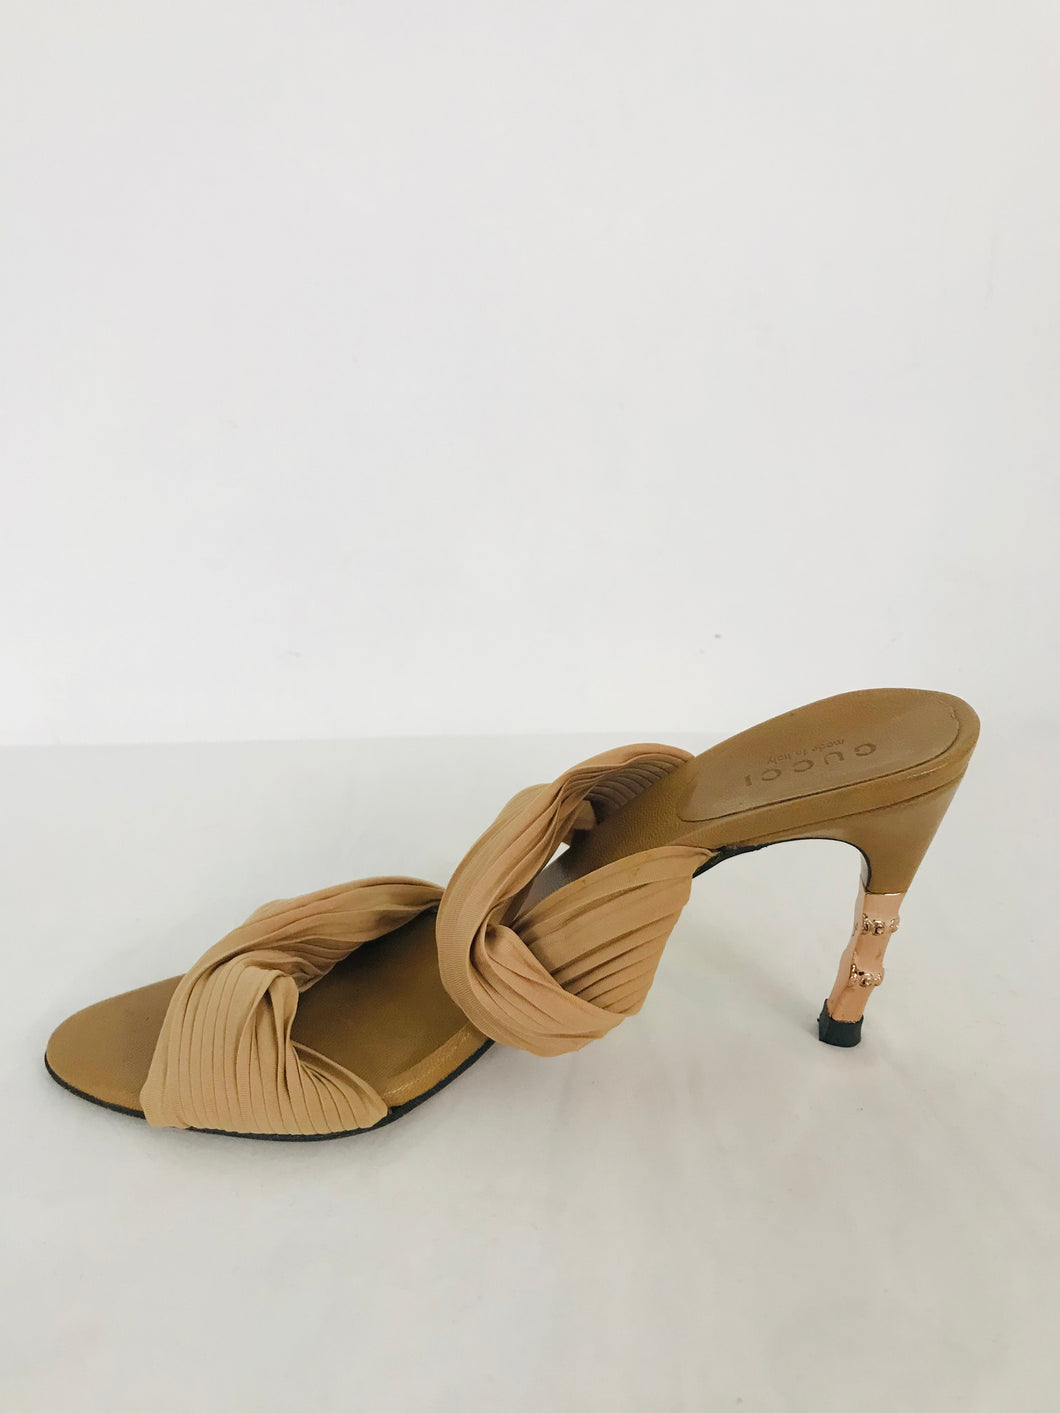 Gucci Women’s Mule Sandals Heels | 35.5 UK2.5 | Brown